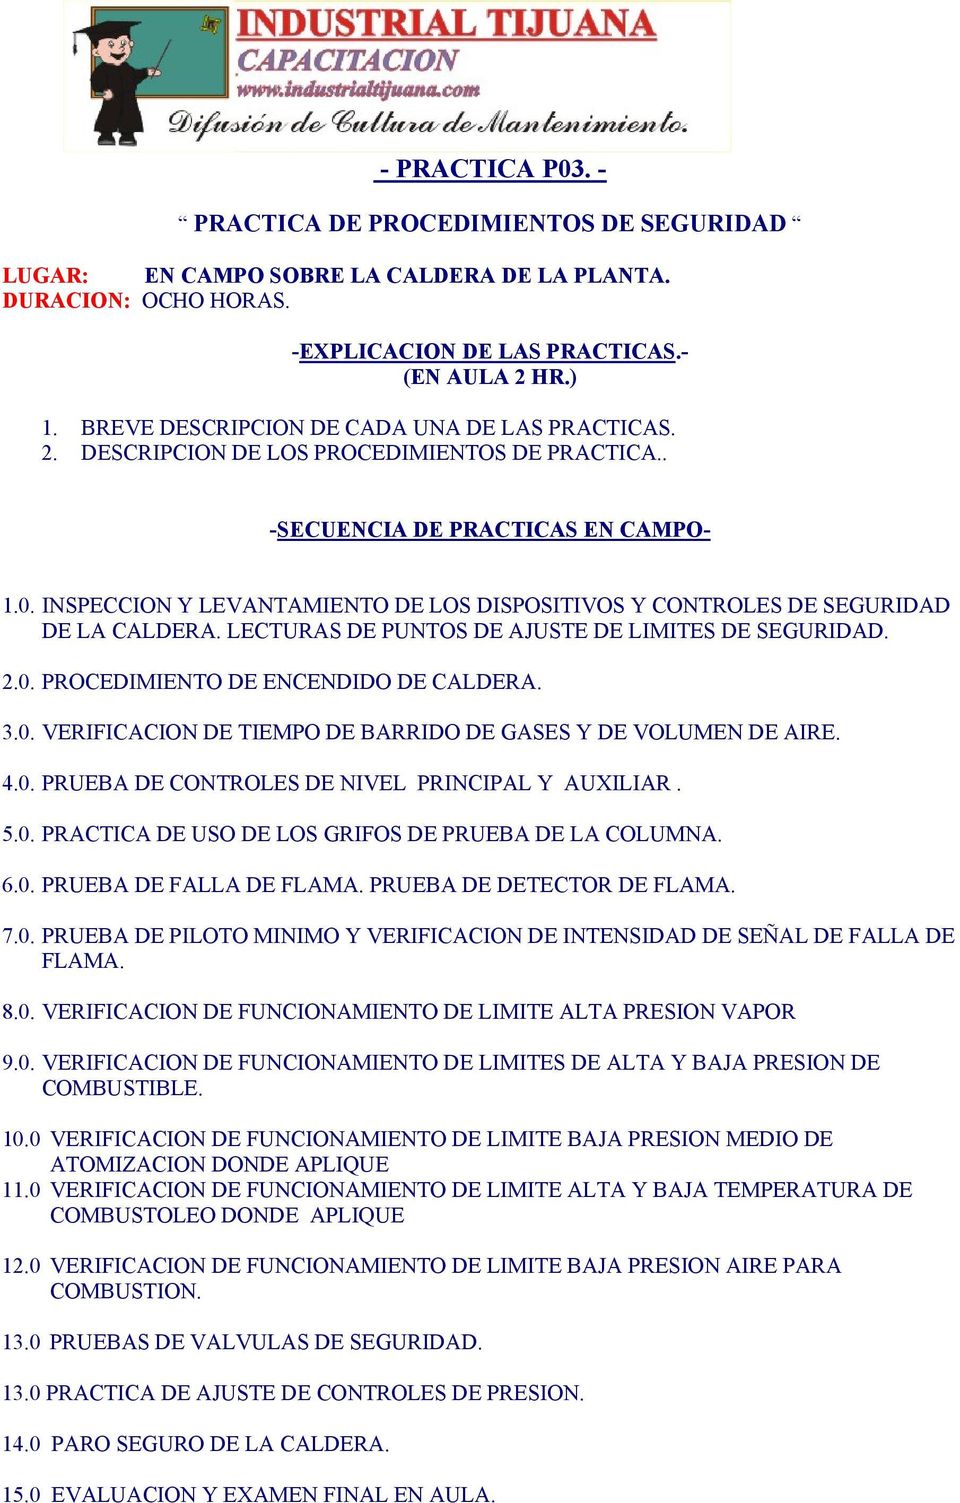 INSPECCION Y LEVANTAMIENTO DE LOS DISPOSITIVOS Y CONTROLES DE SEGURIDAD DE LA CALDERA. LECTURAS DE PUNTOS DE AJUSTE DE LIMITES DE SEGURIDAD. 2.0.